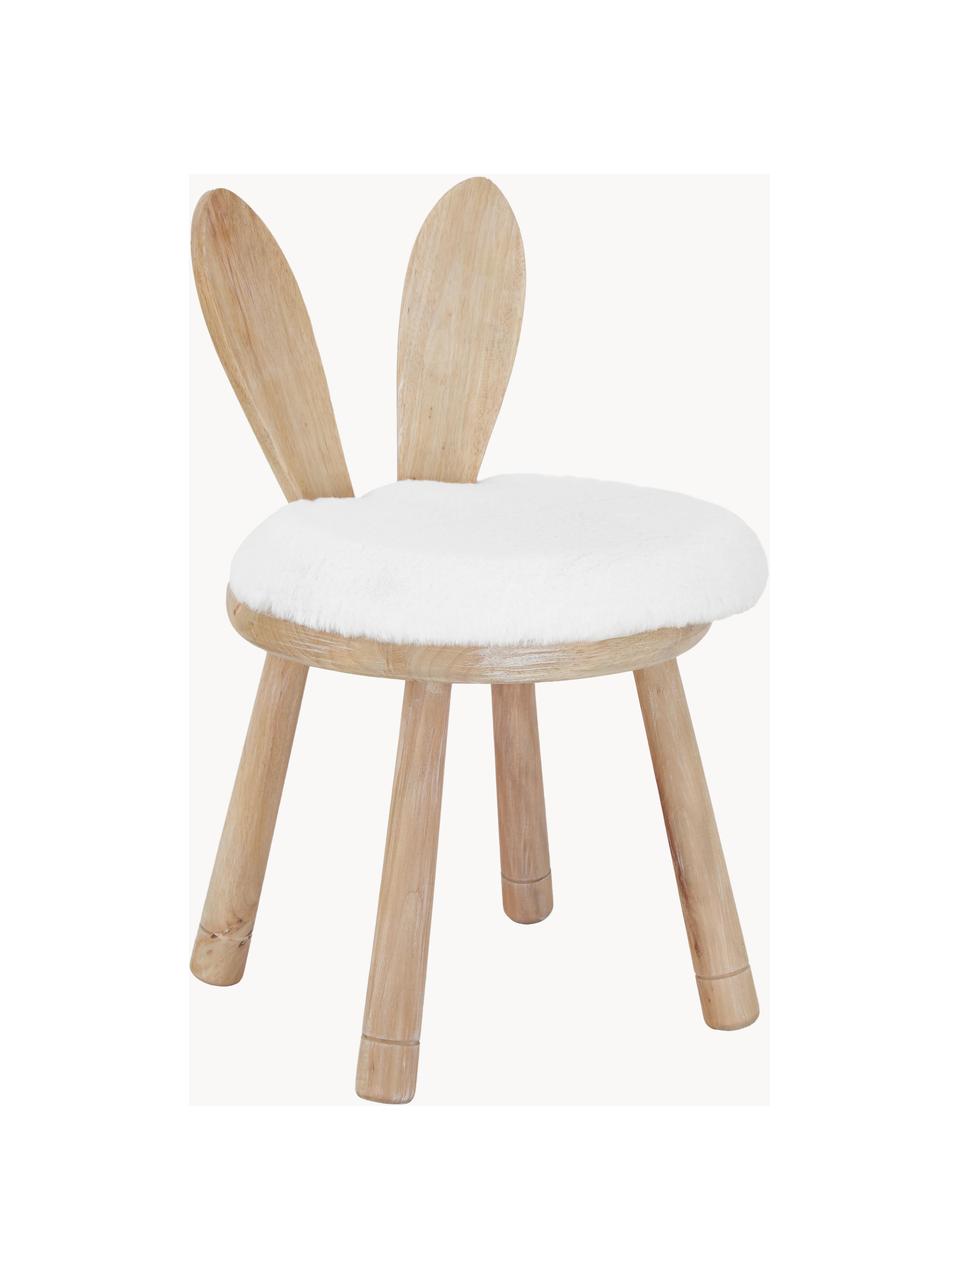 Dětská židle z kaučukového dřeva s podsedákem Bunny, Bílá, kaučukové dřevo, Š 34 cm, V 55 cm